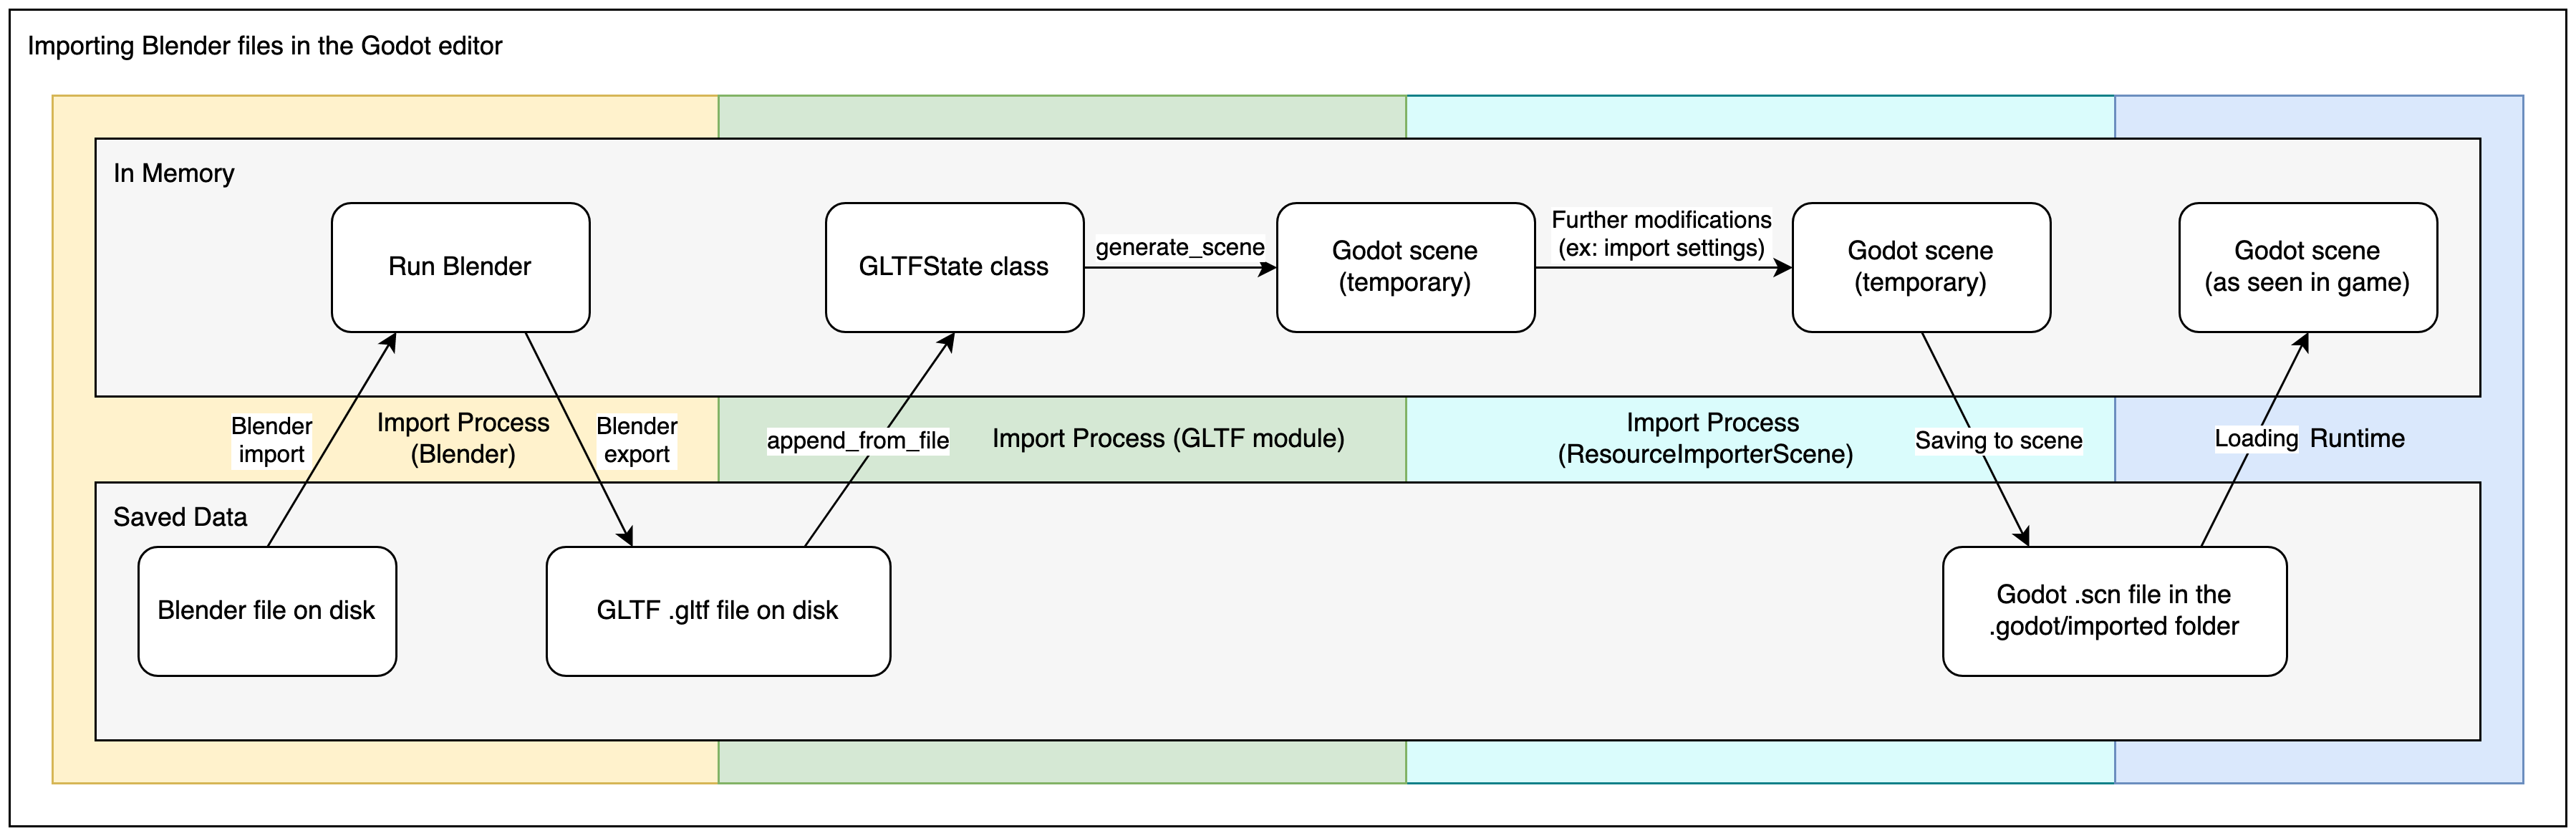 Diagram explaining the import process for Blender files in Godot